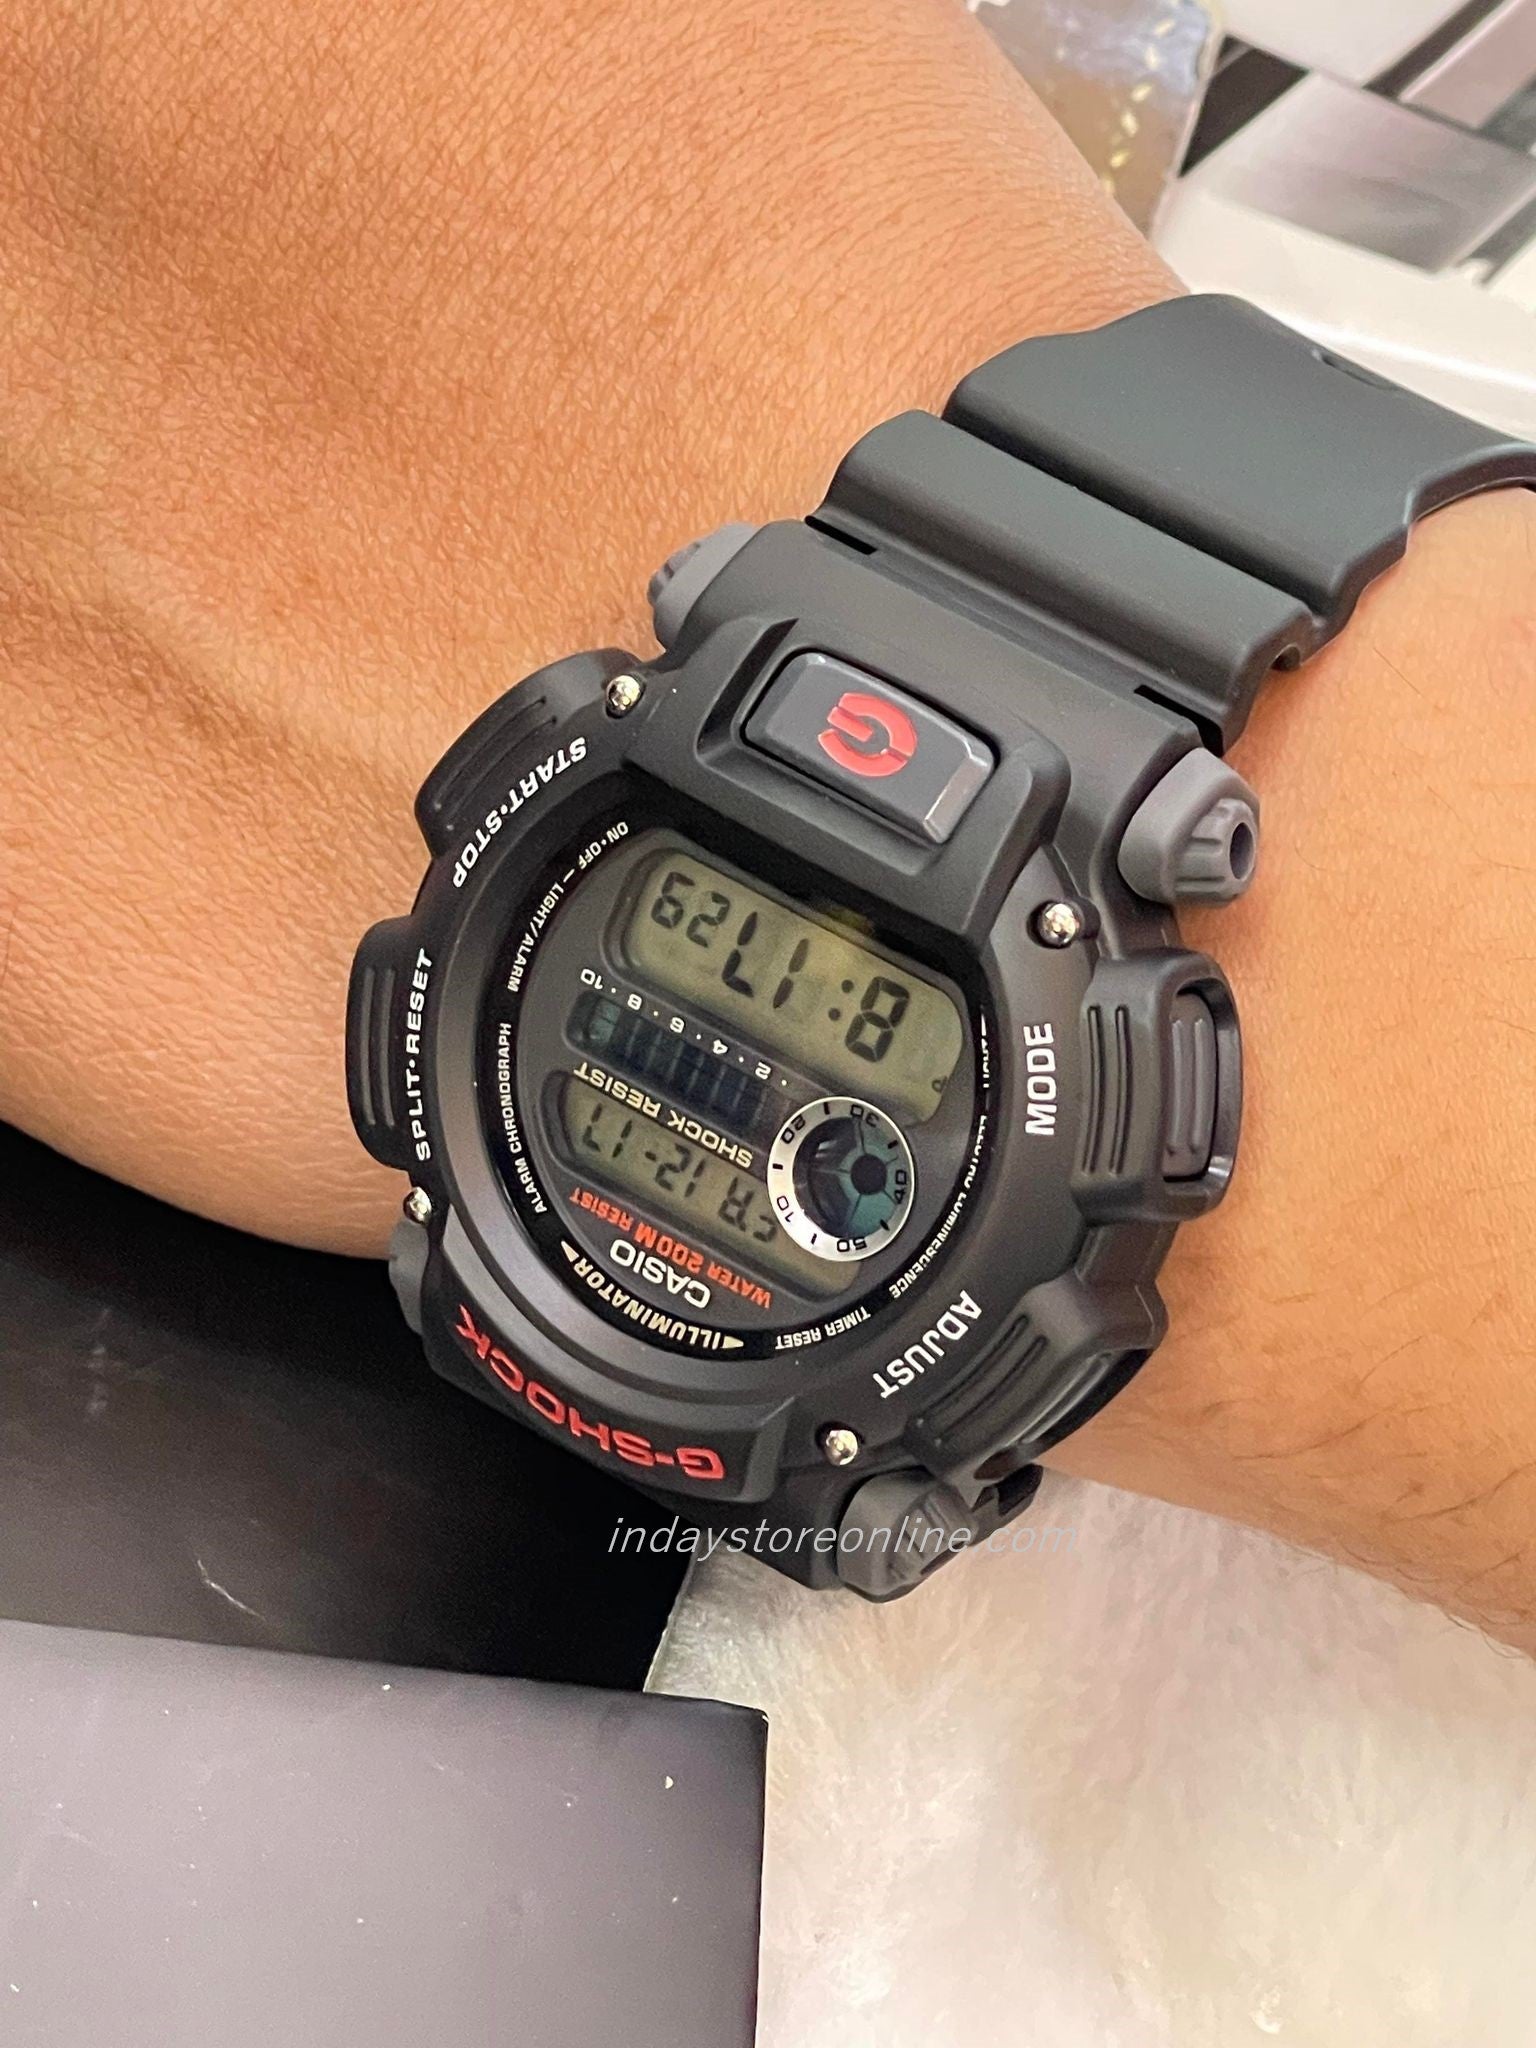 G-SHOCK dw-9052 - 腕時計(デジタル)